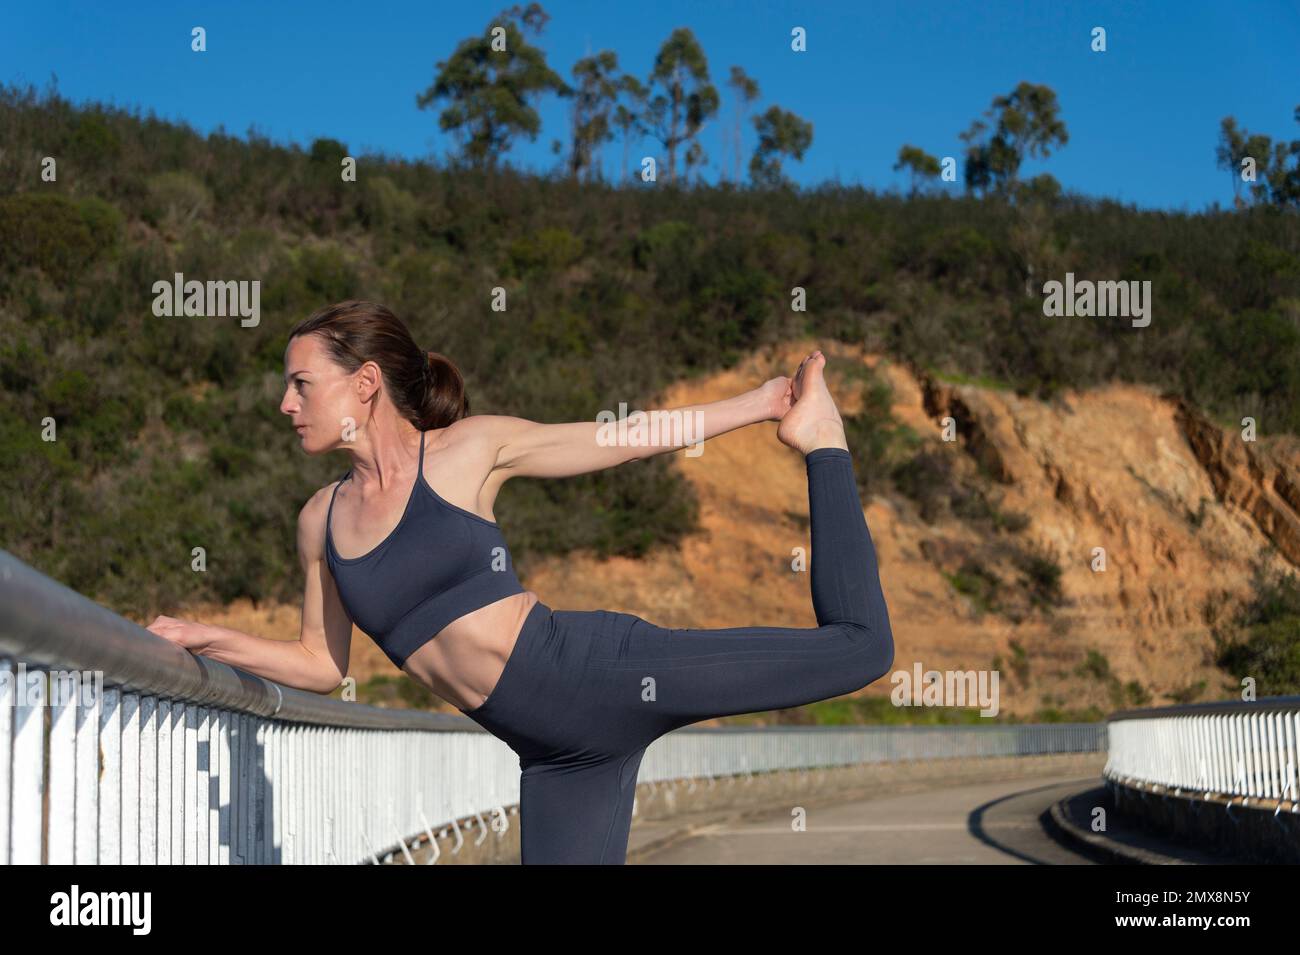 Mujer practicando yoga y estirando afuera, pose bailarina. Foto de stock